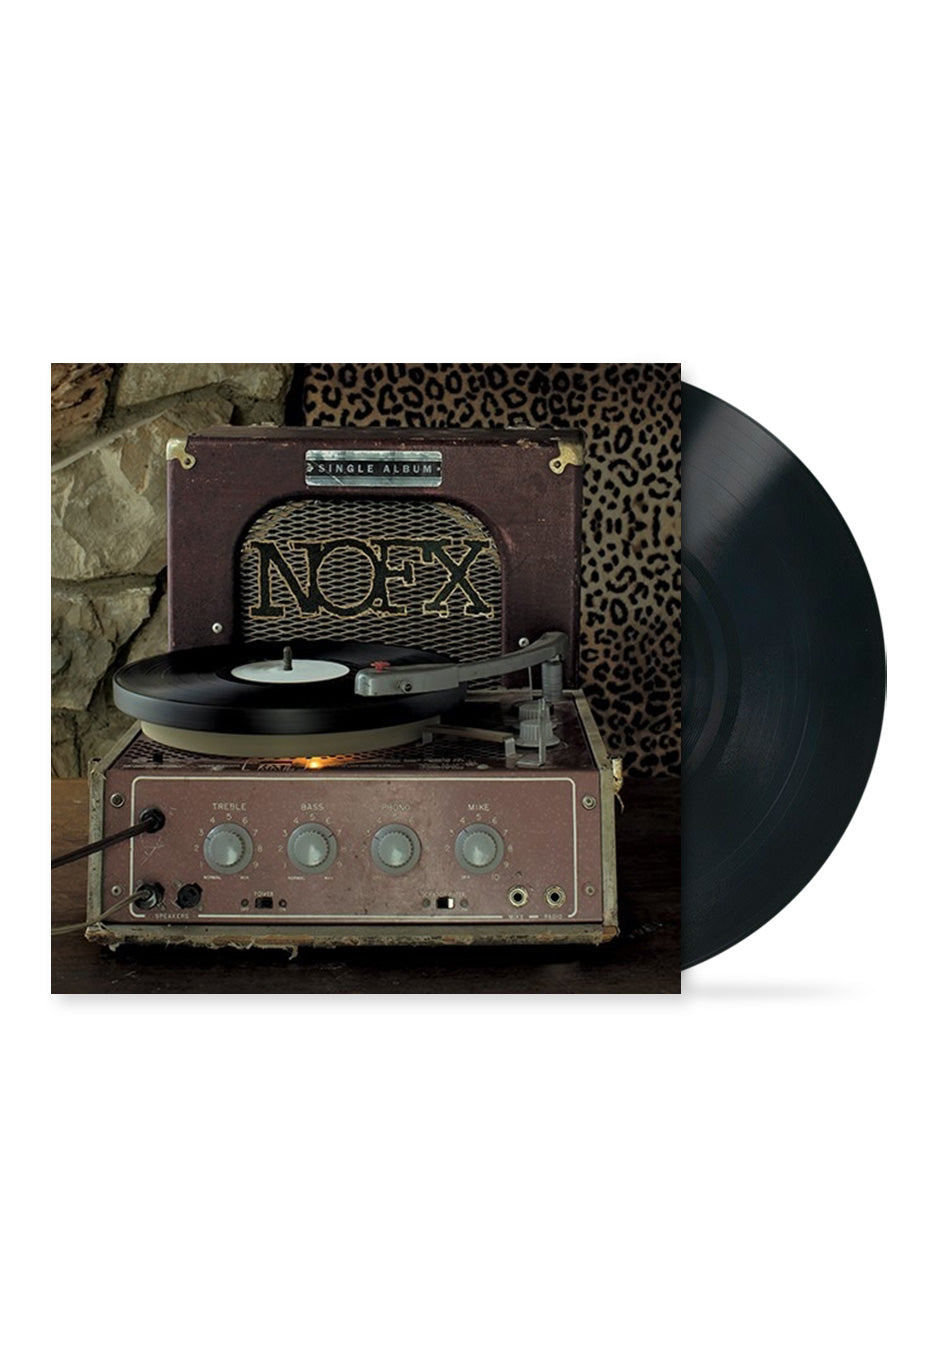 NOFX - Single Album - Vinyl